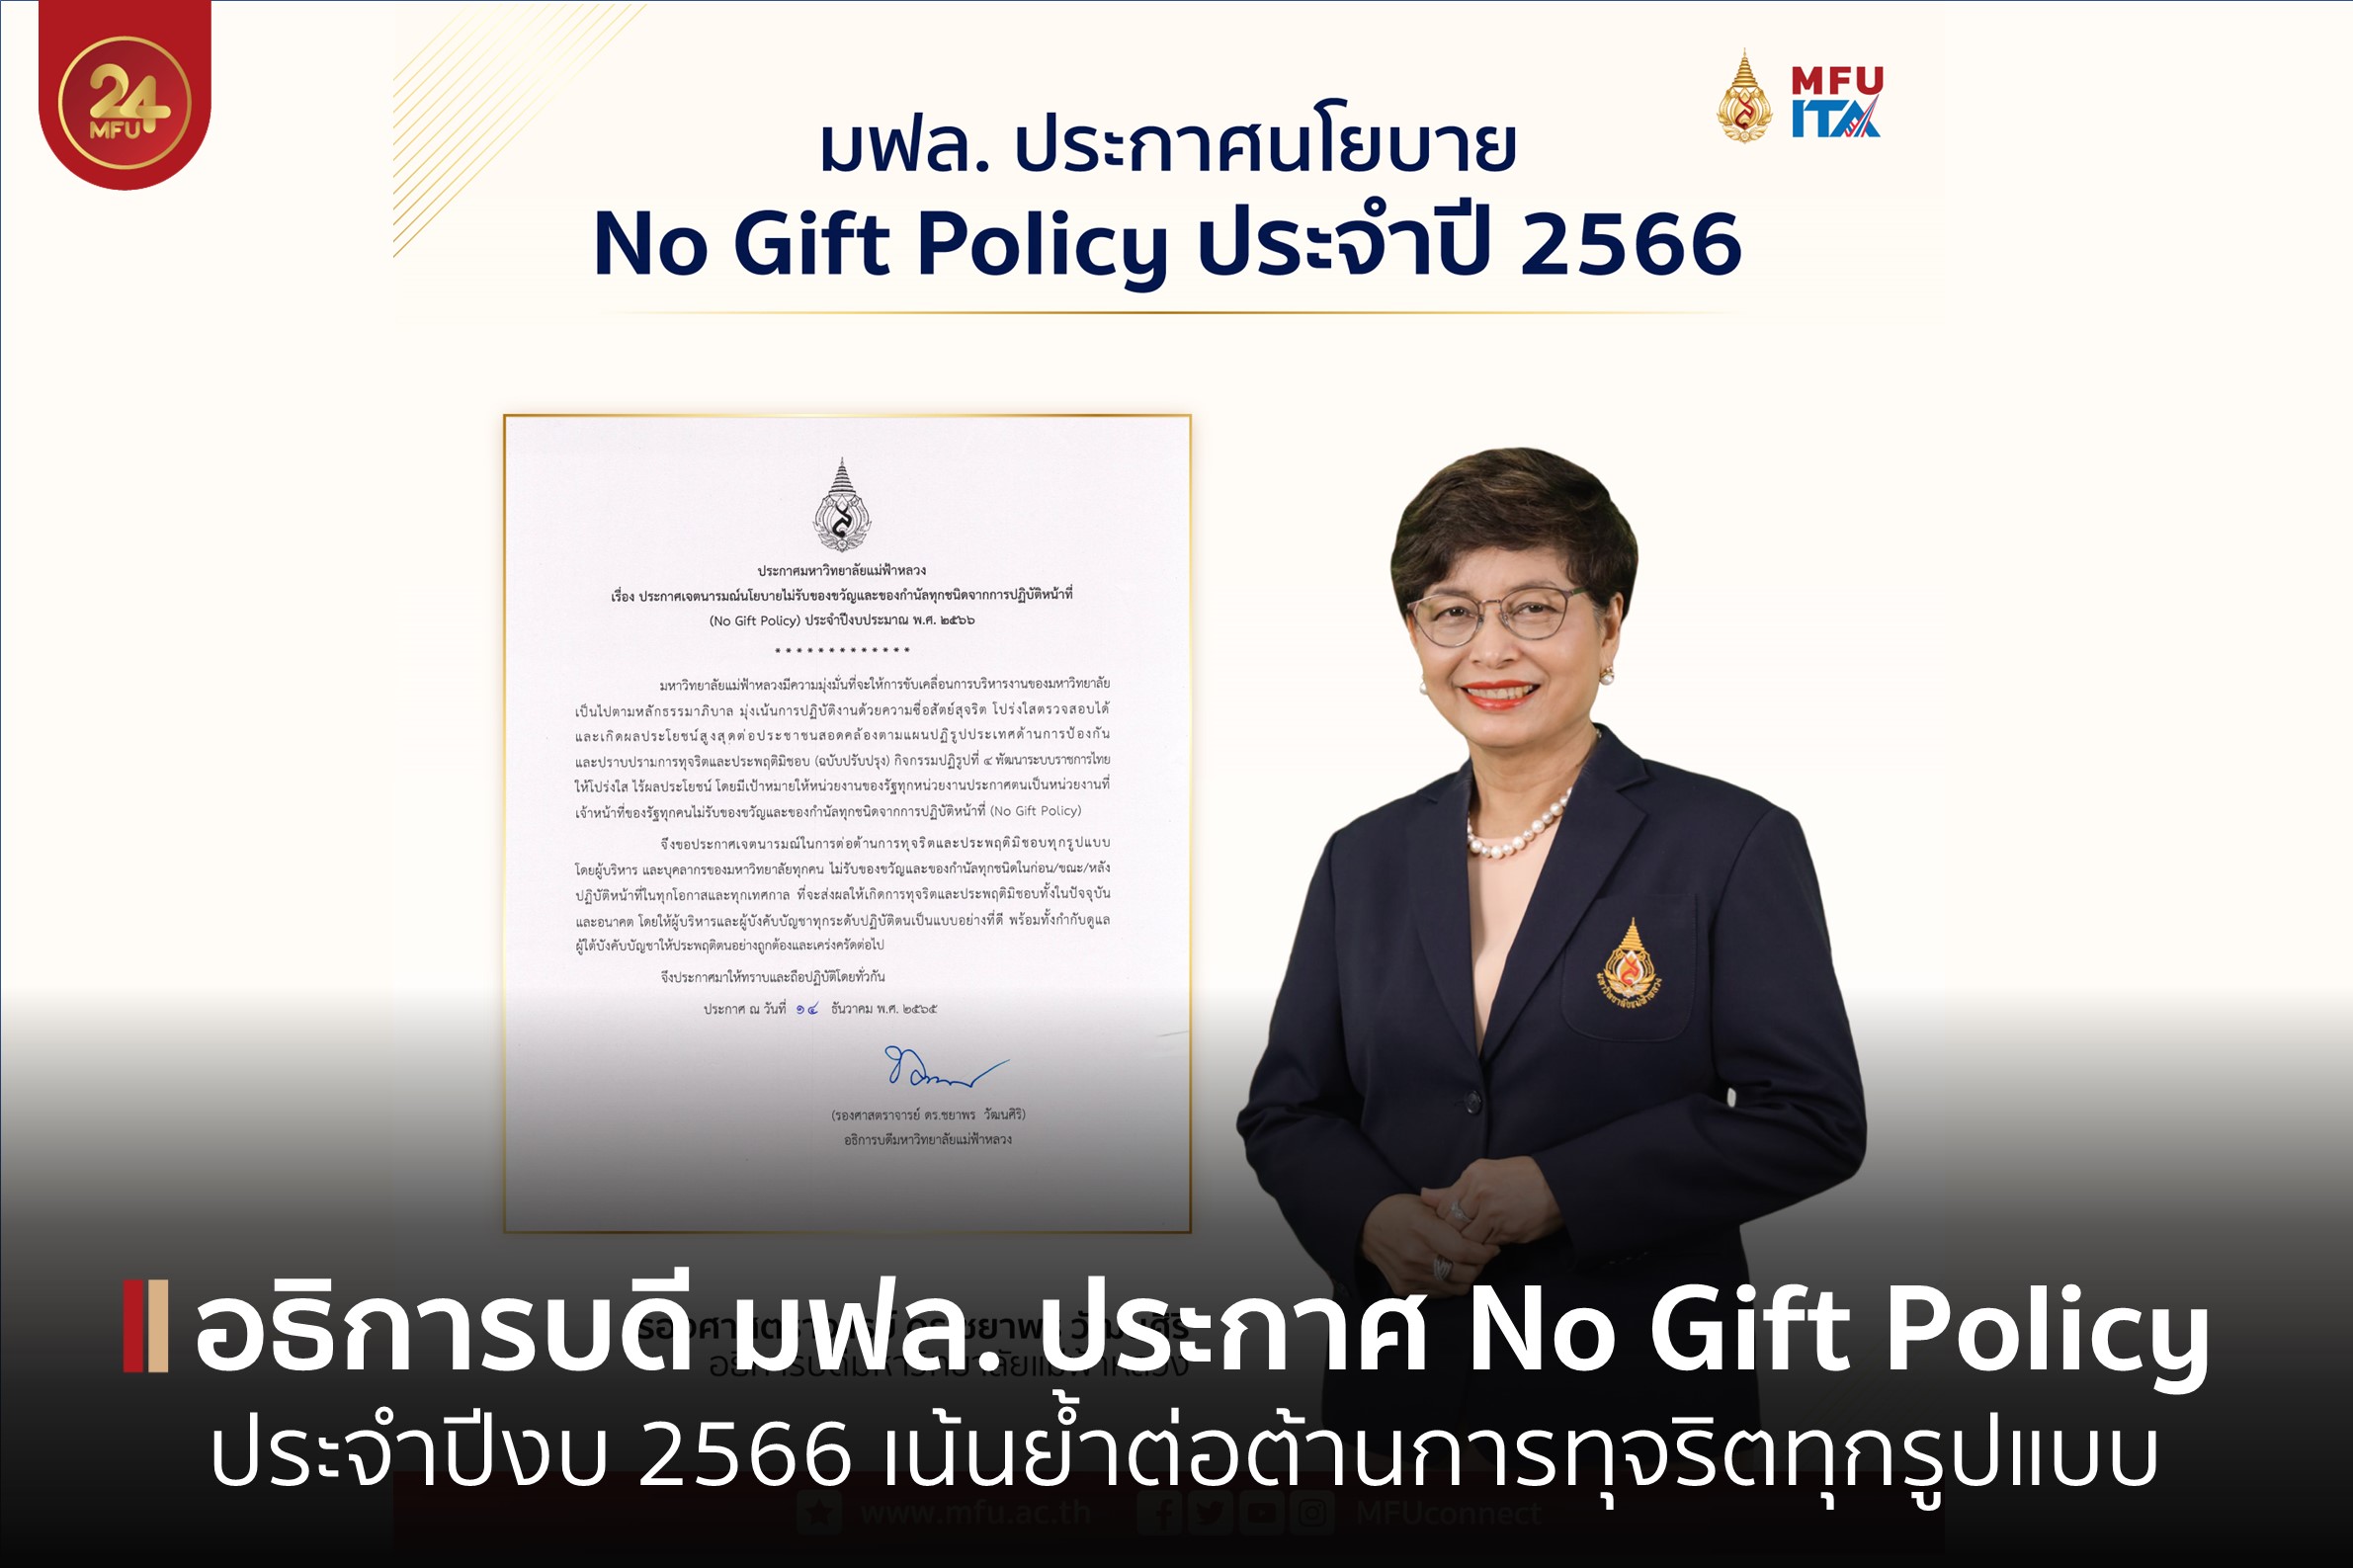 อธิการบดี มฟล. ประกาศ NO Gift Policy ประจำปีงบประมาณ 2566 เน้นย้ำต่อต้านการทุจริตทุกรูปแบบ